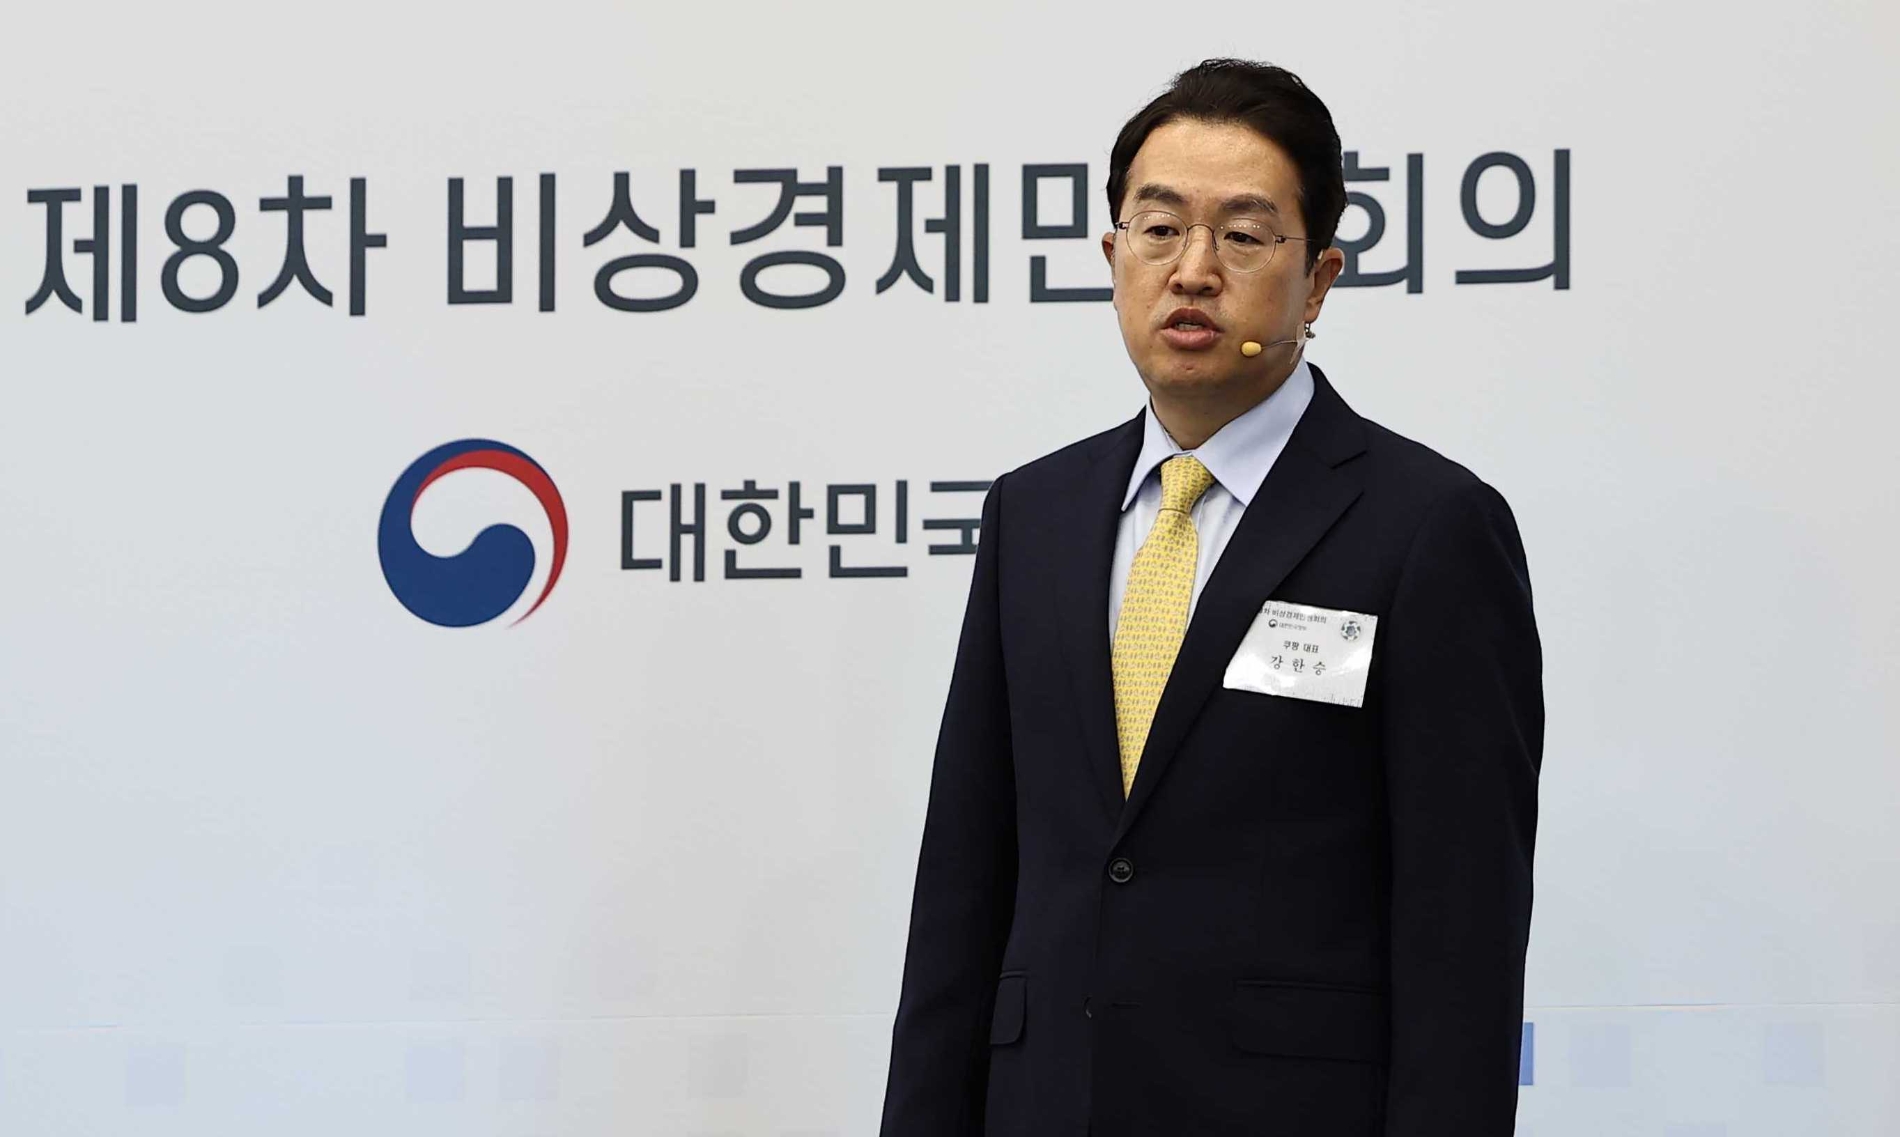 [생활경제 이슈] 강한승 쿠팡 대표 "대한민국 디지털 대전환 선도할 것"  外